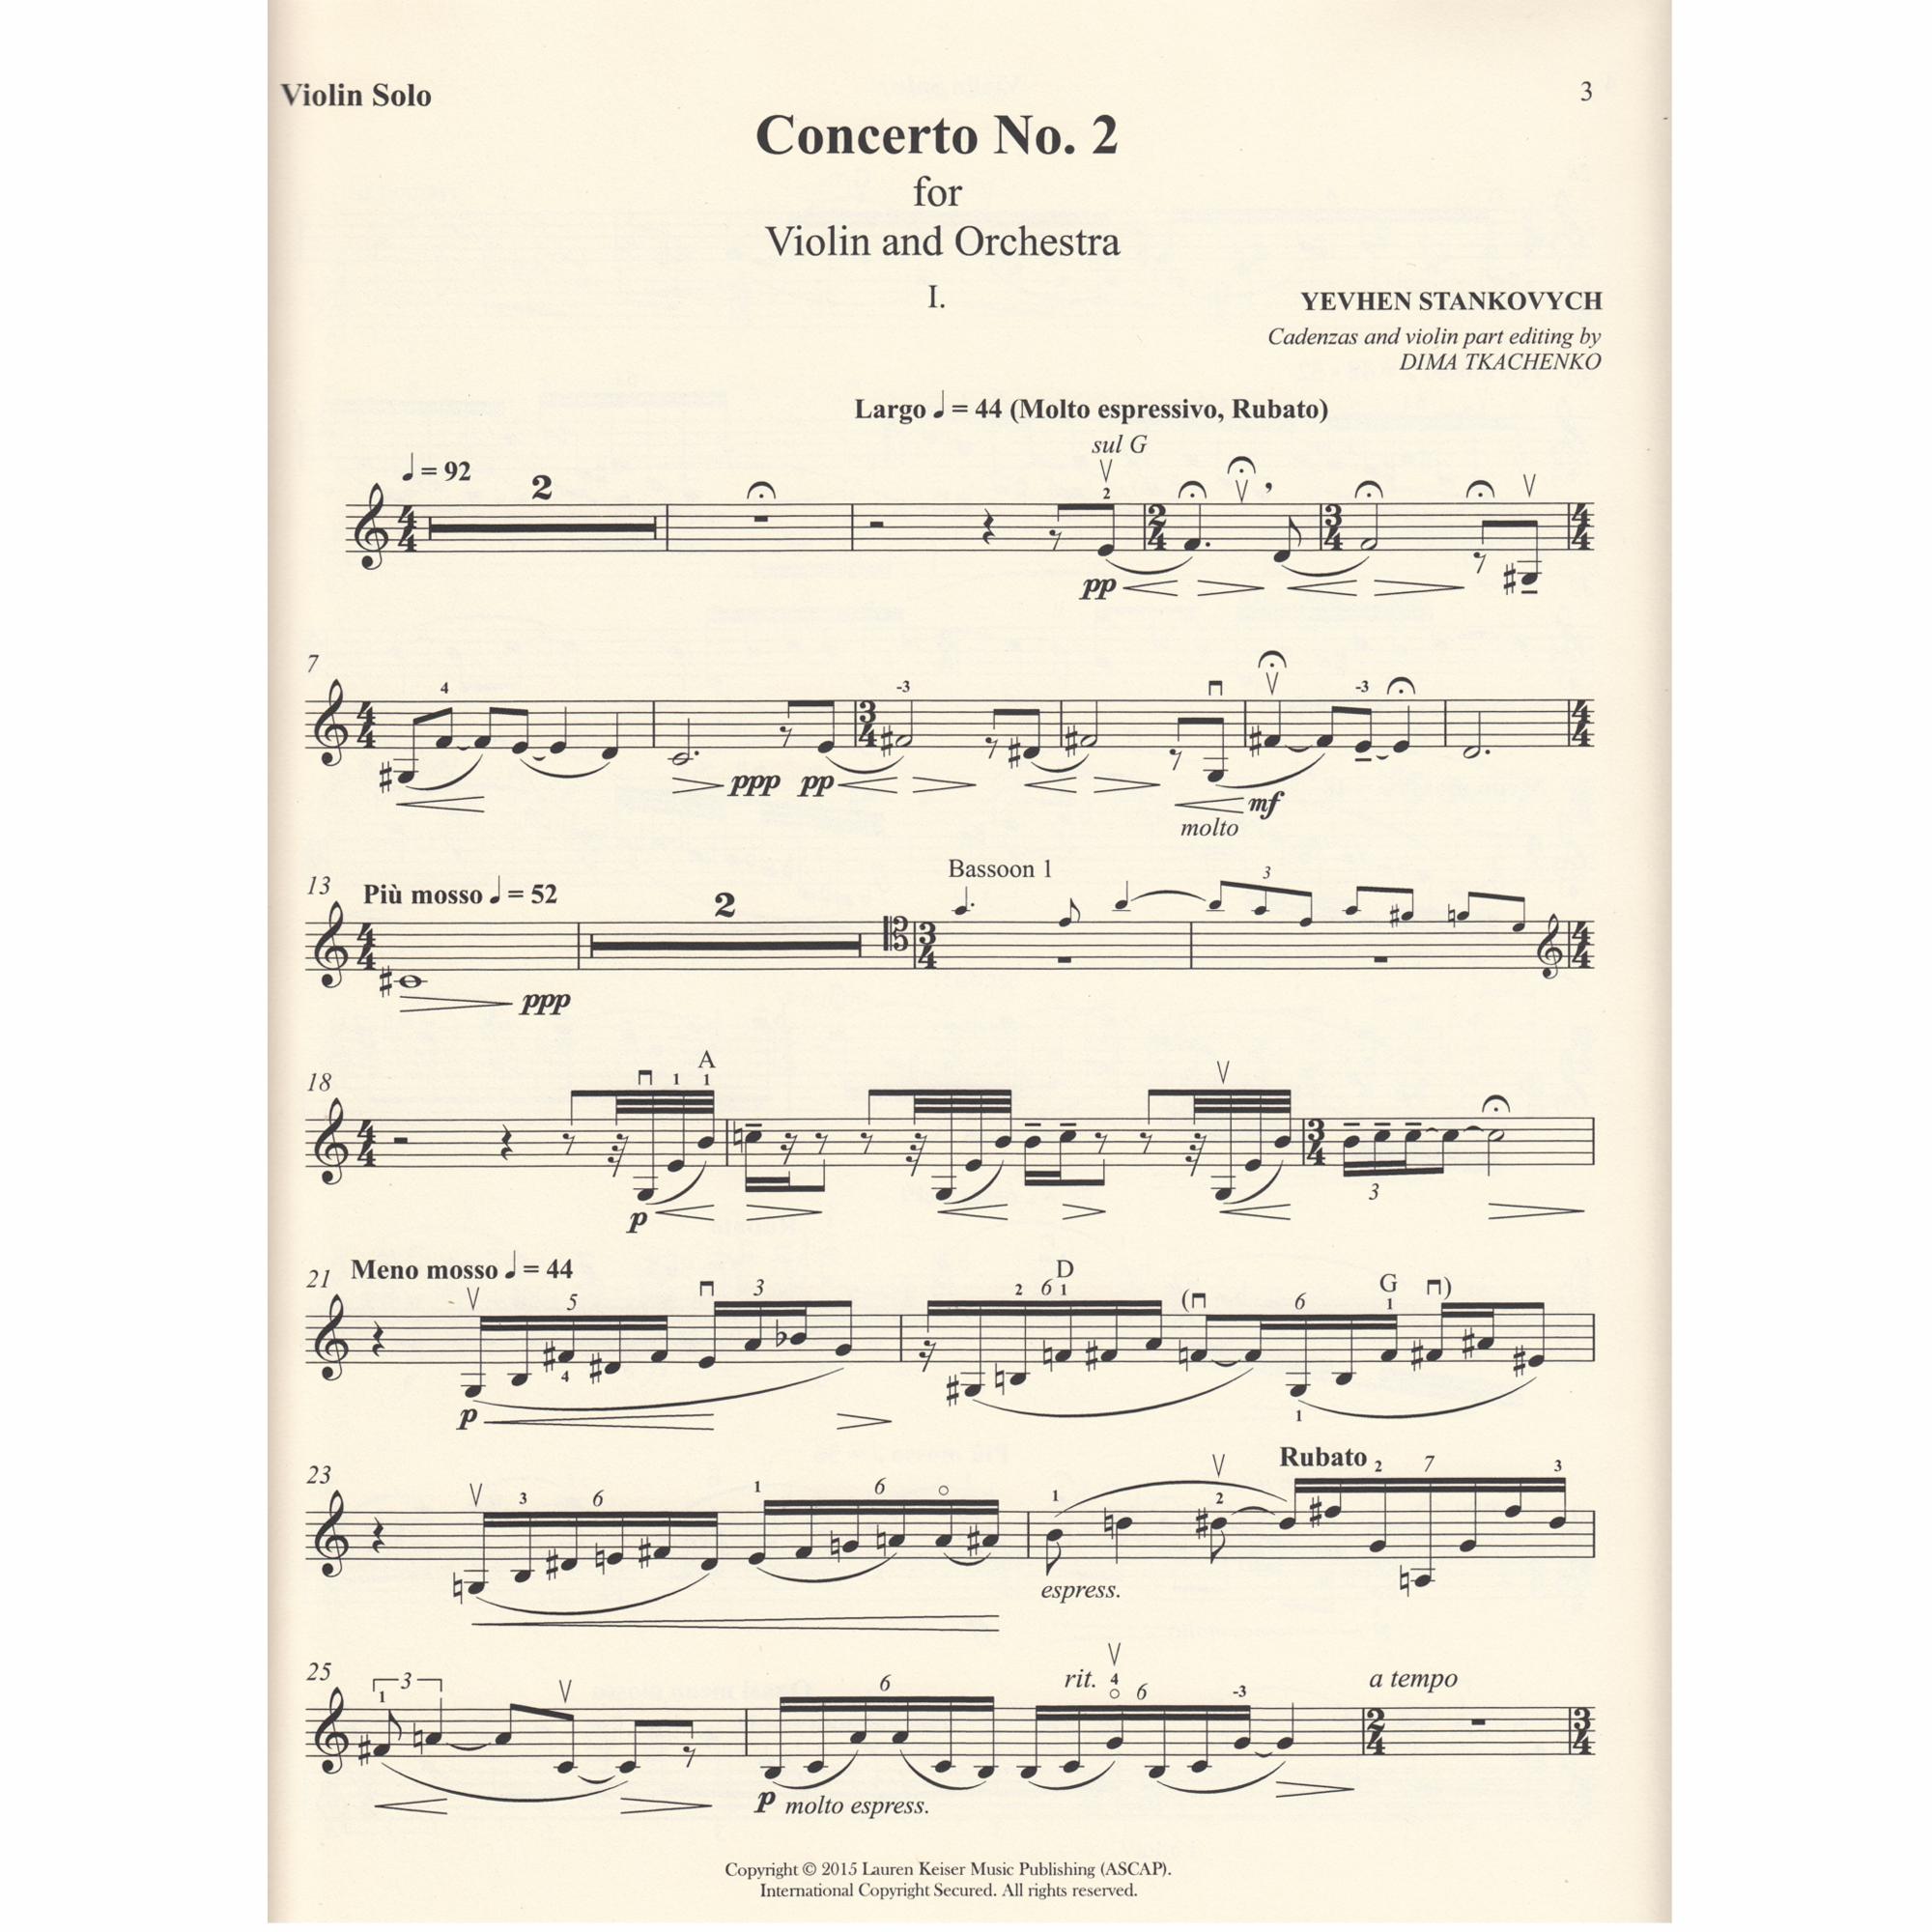 Yevhen Stankovych Concerto No. 2 Violin/Piano Reduction